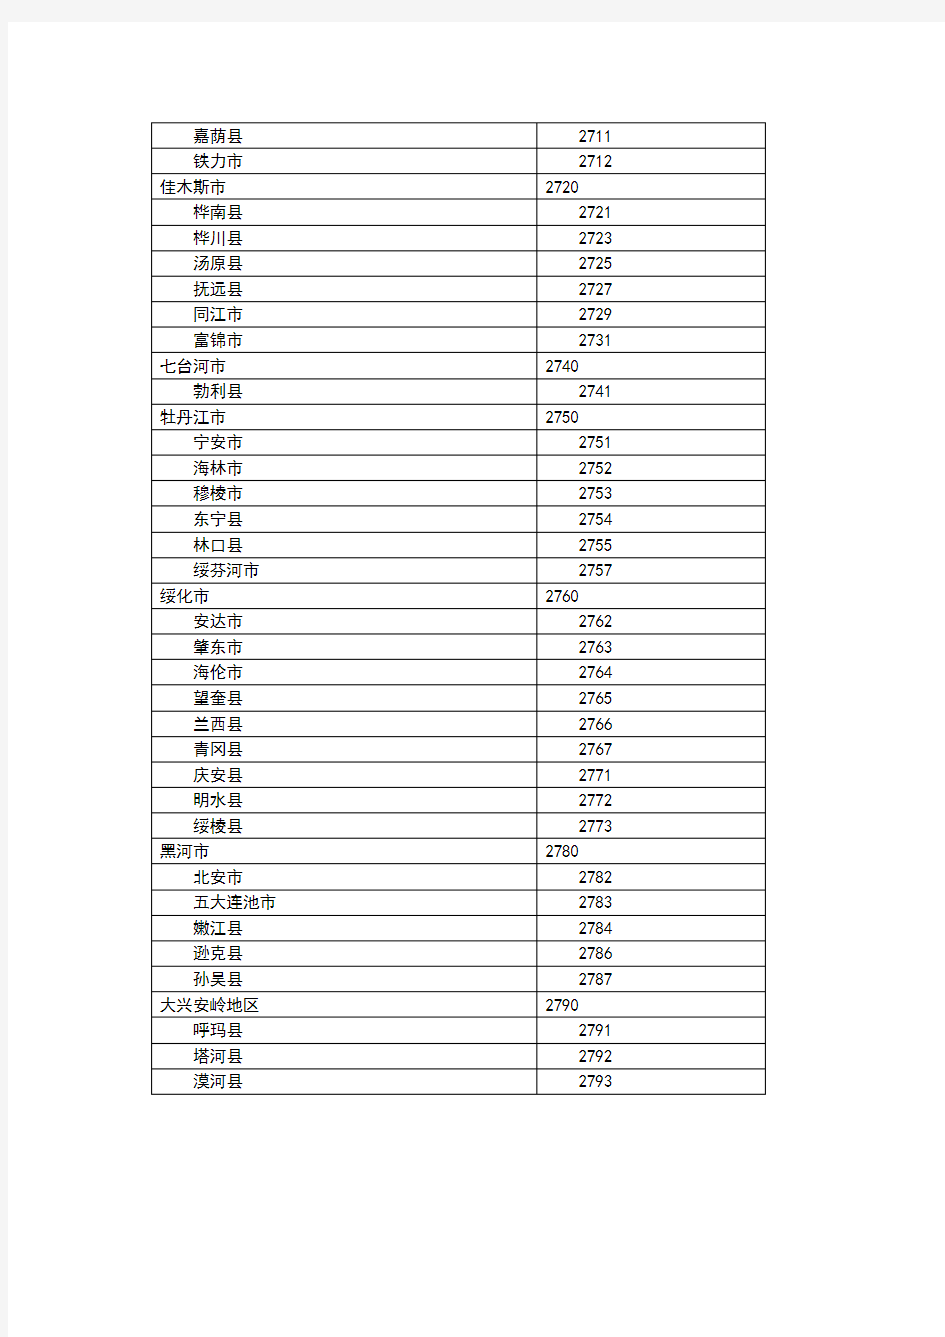 黑龙江省各级地区代码表